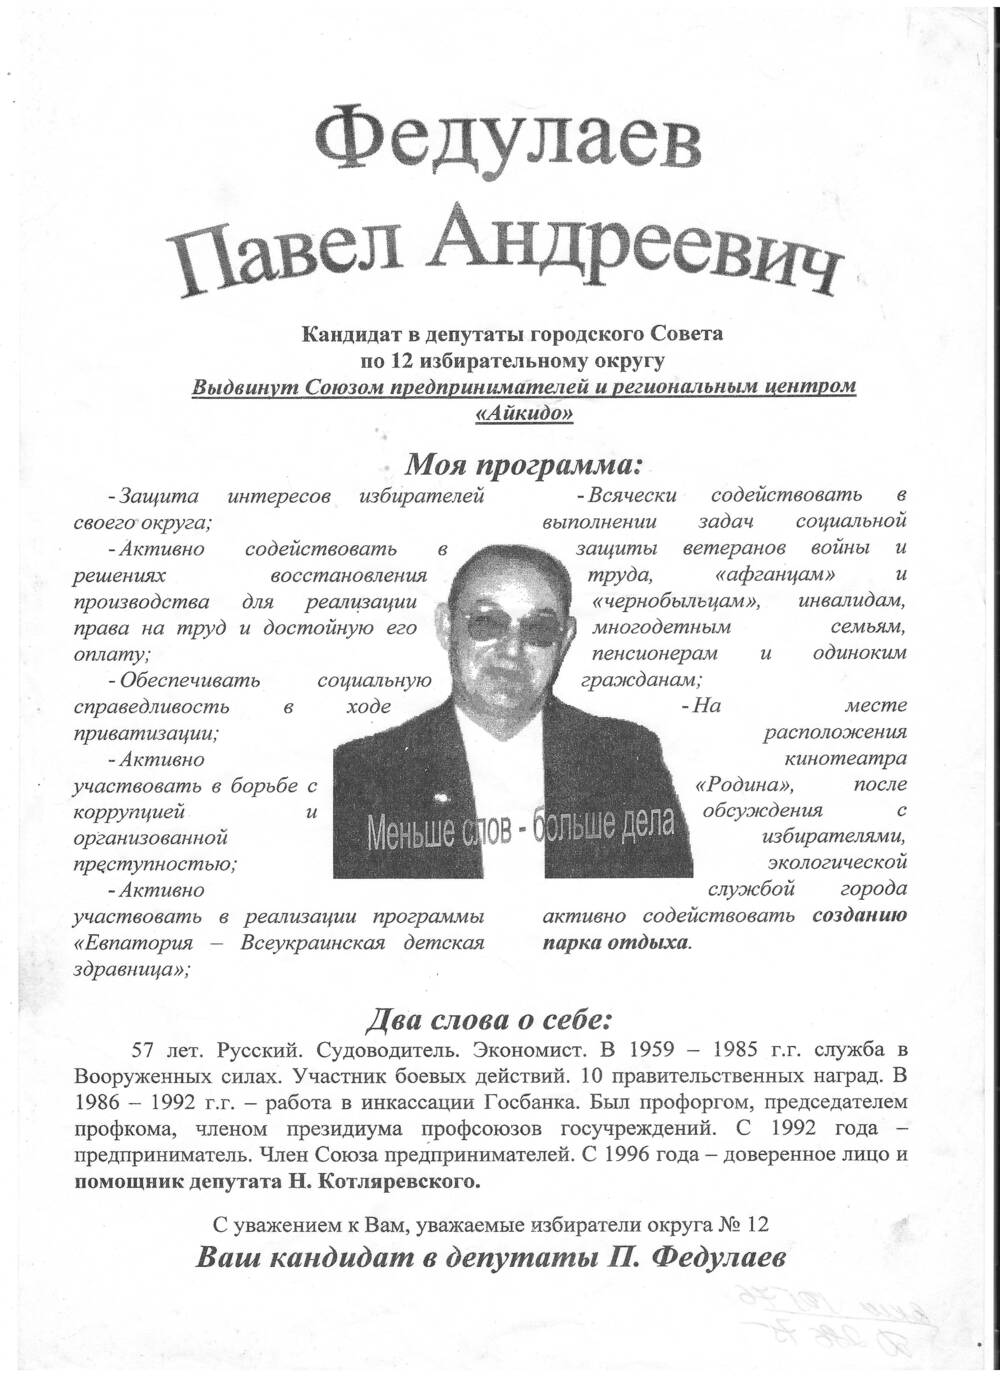 Листовка Федулаев Павел Андреевич кандидат  в депутаты горсовета по 12 избирательному округу